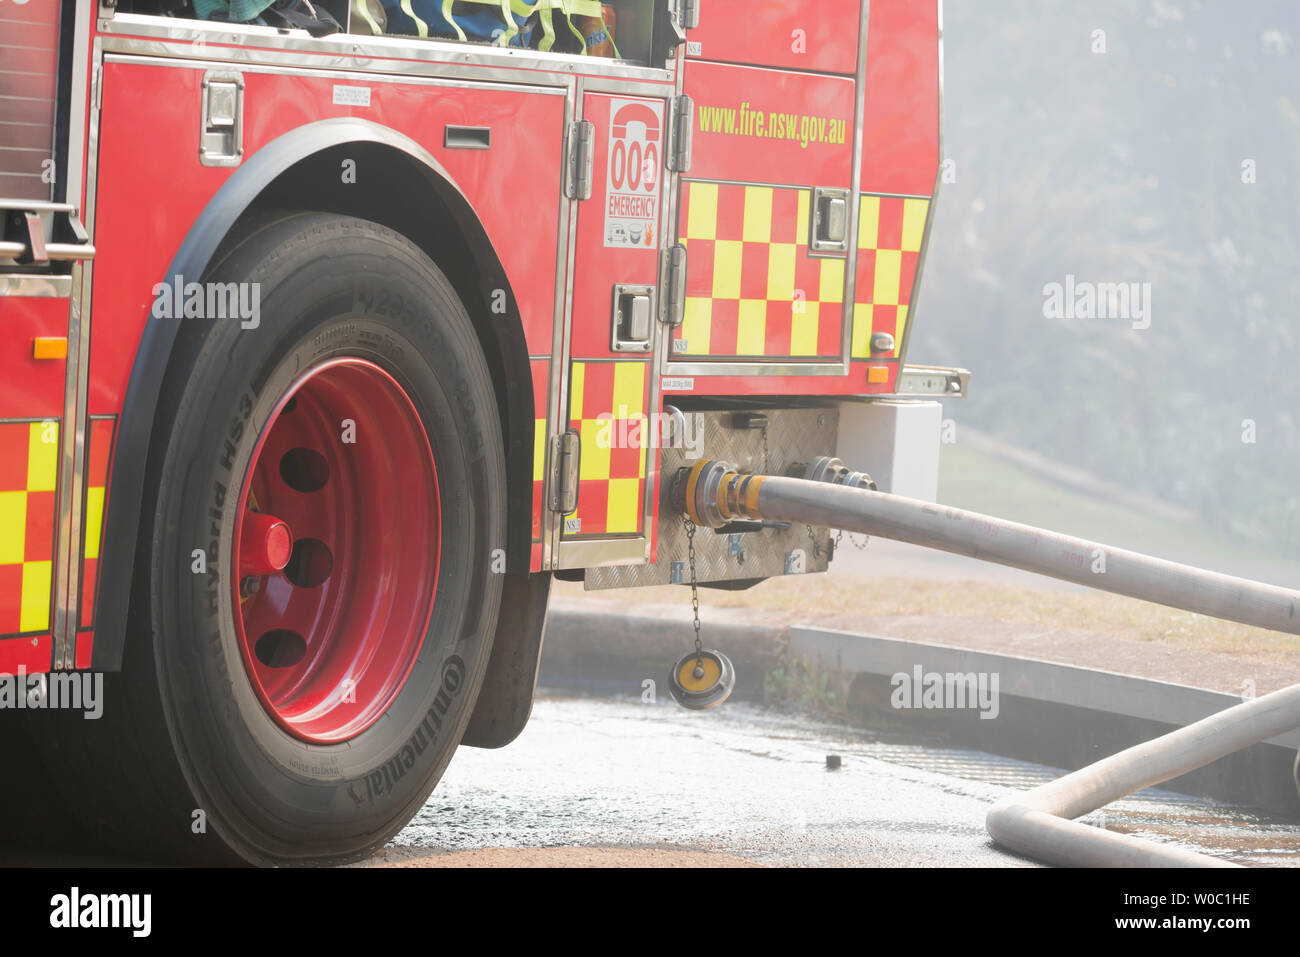 Un incendio de Nueva Gales del Sur y el camión de rescate con mangueras contra incendios conectado, estacionado en una calle llena de humo suburbano durante una reducción del peligro de quemadura en Sydney Foto de stock